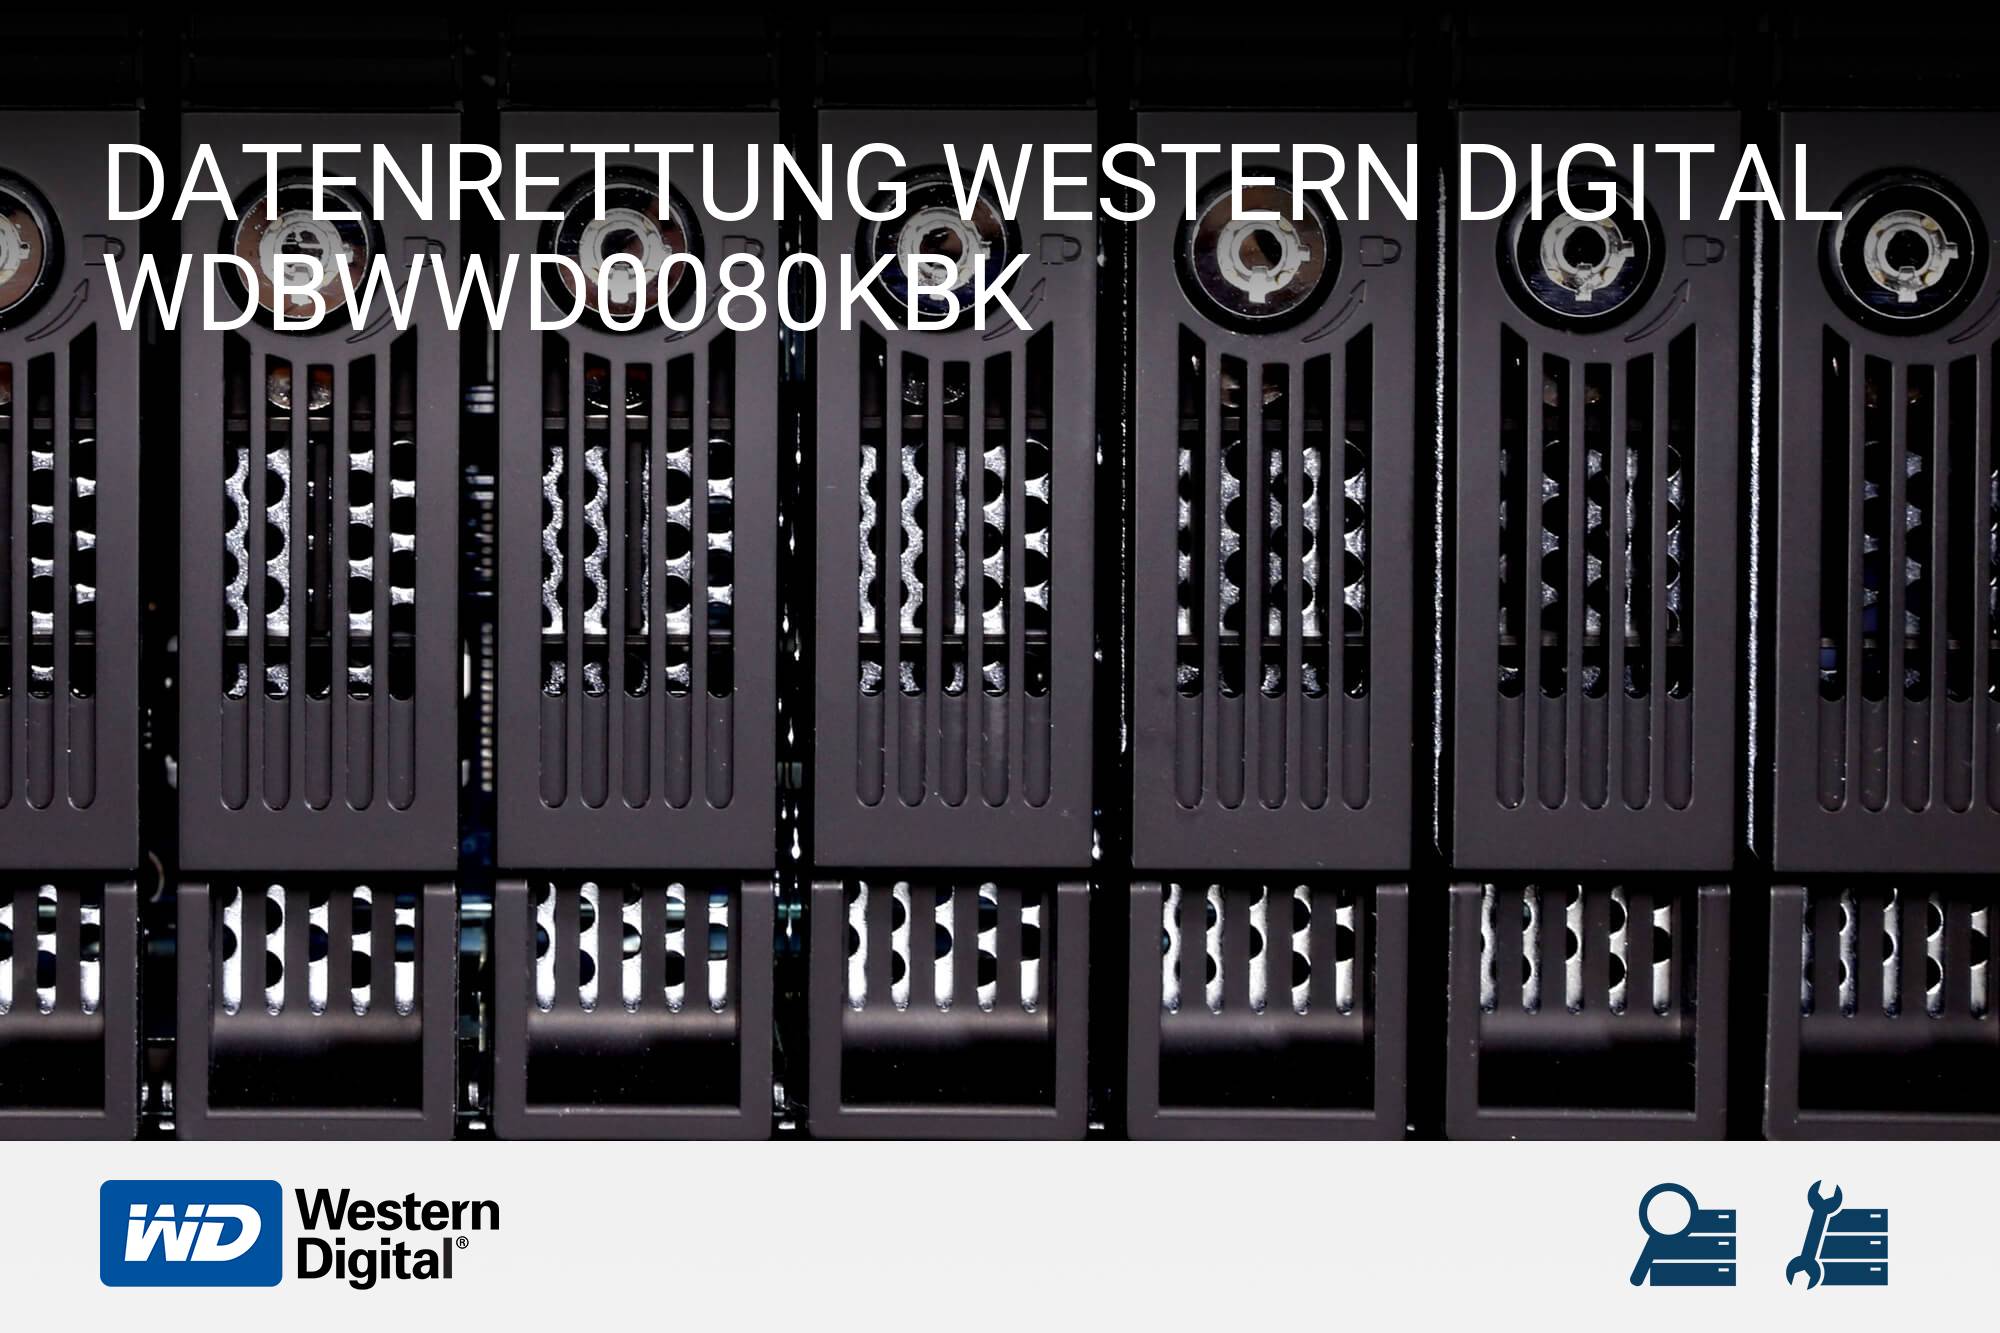 Western Digital WDBWWD0080KBK